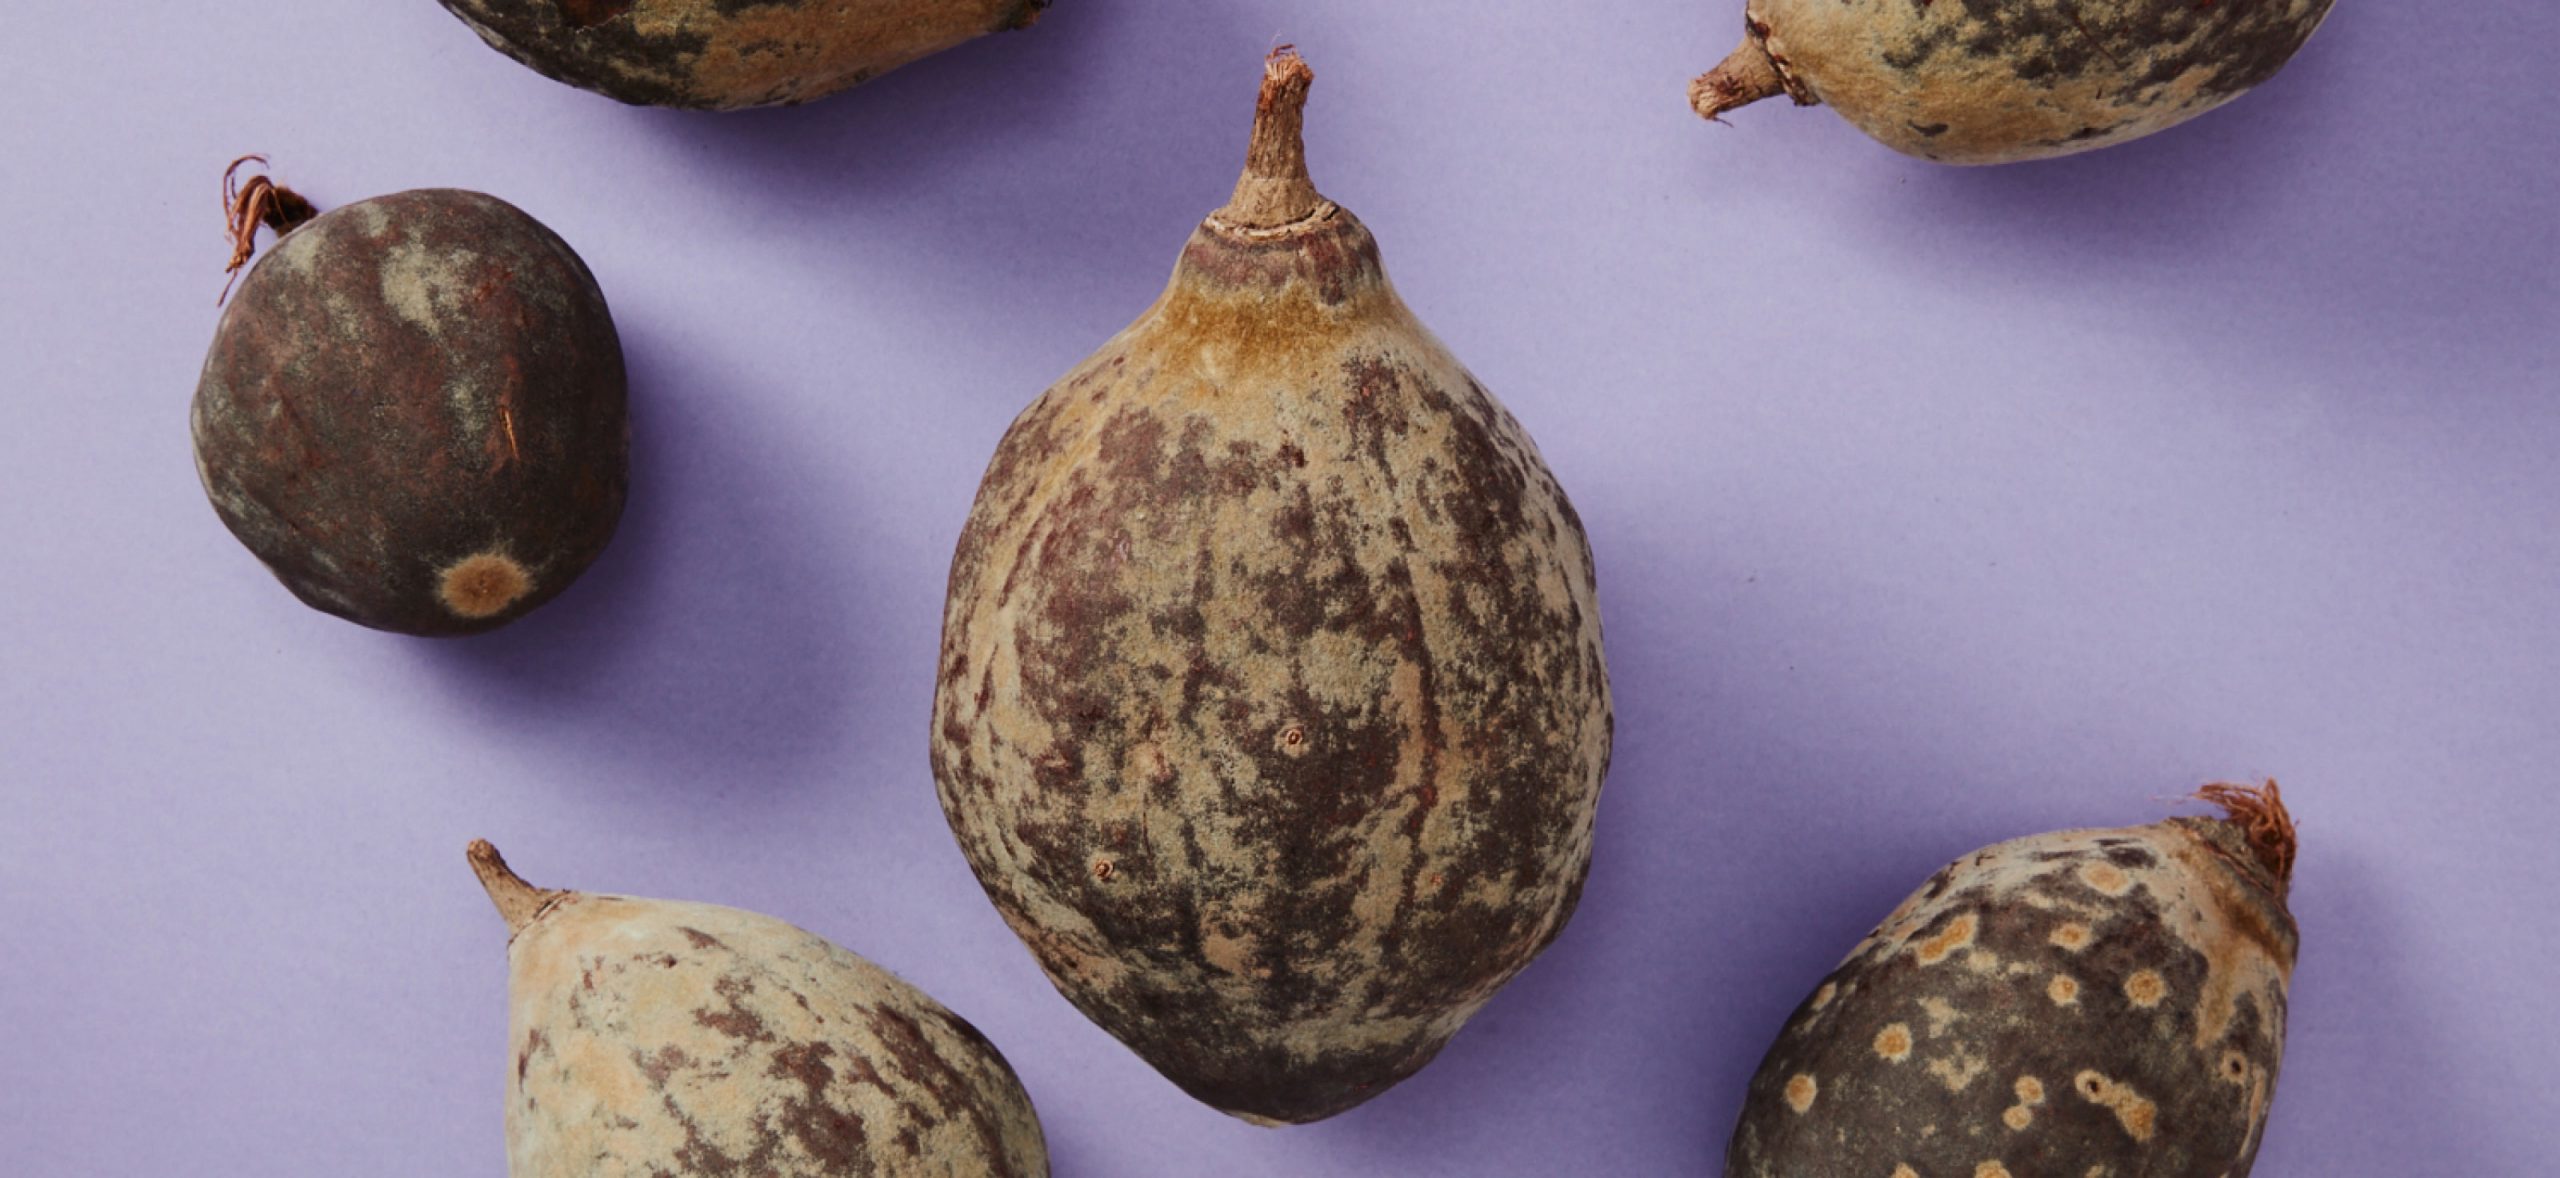 Bild från ovanifrån på den Afrikanska baobabfrukten med hälsosamma effekter som används till nya och nyttiga livsmedel mot lila bakgrund.